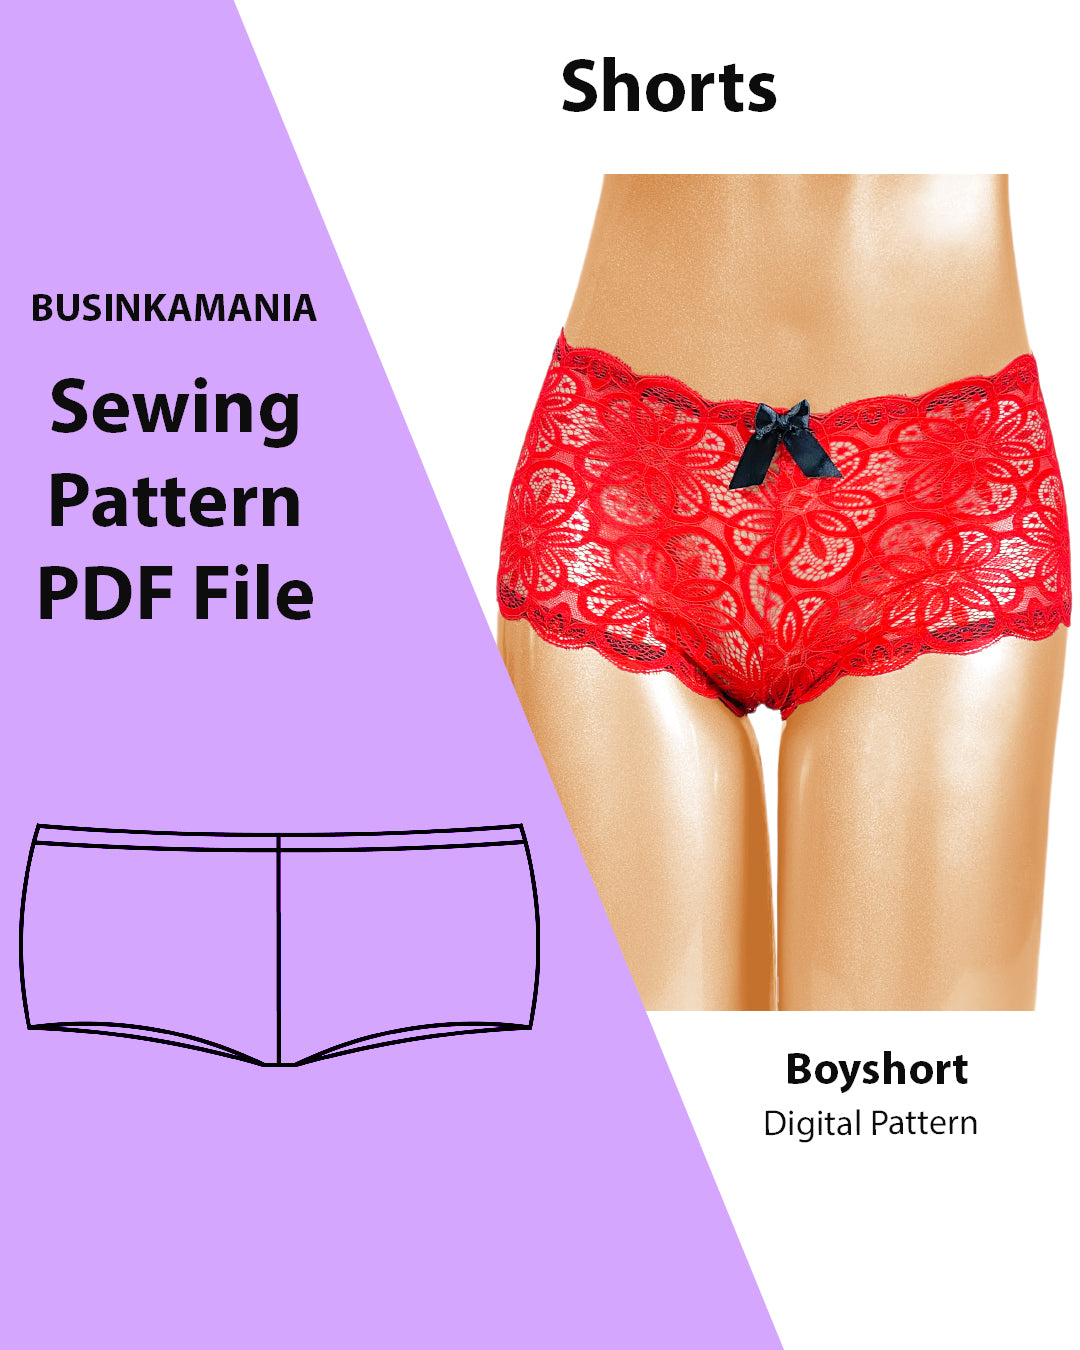 BoyShort Panties Sewing Pattern – BusinkaMania